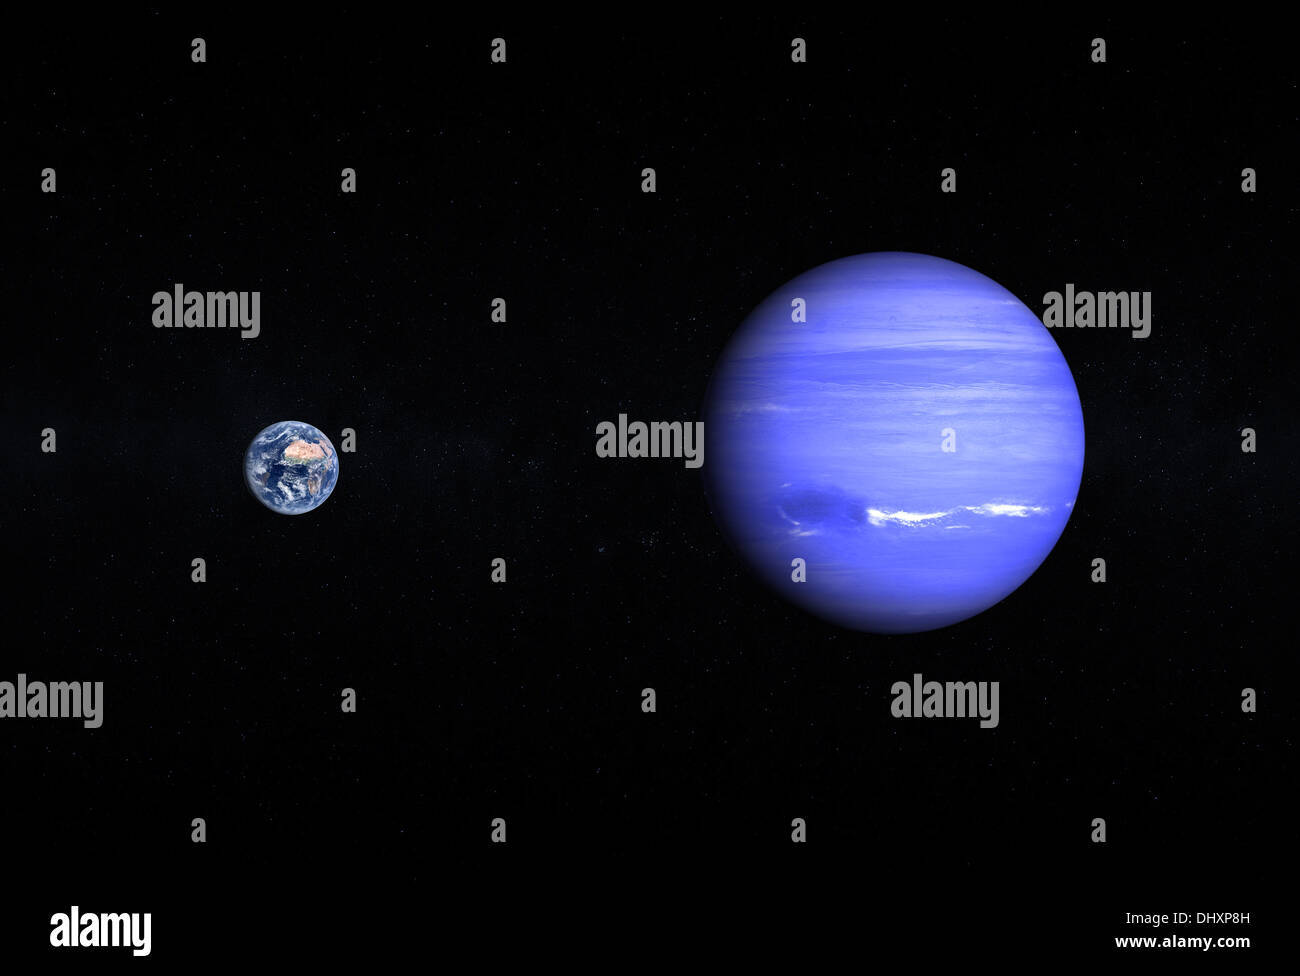 Ein Vergleich zwischen den Planeten Erde und Neptun auf einem Sternenhimmel. Stockfoto